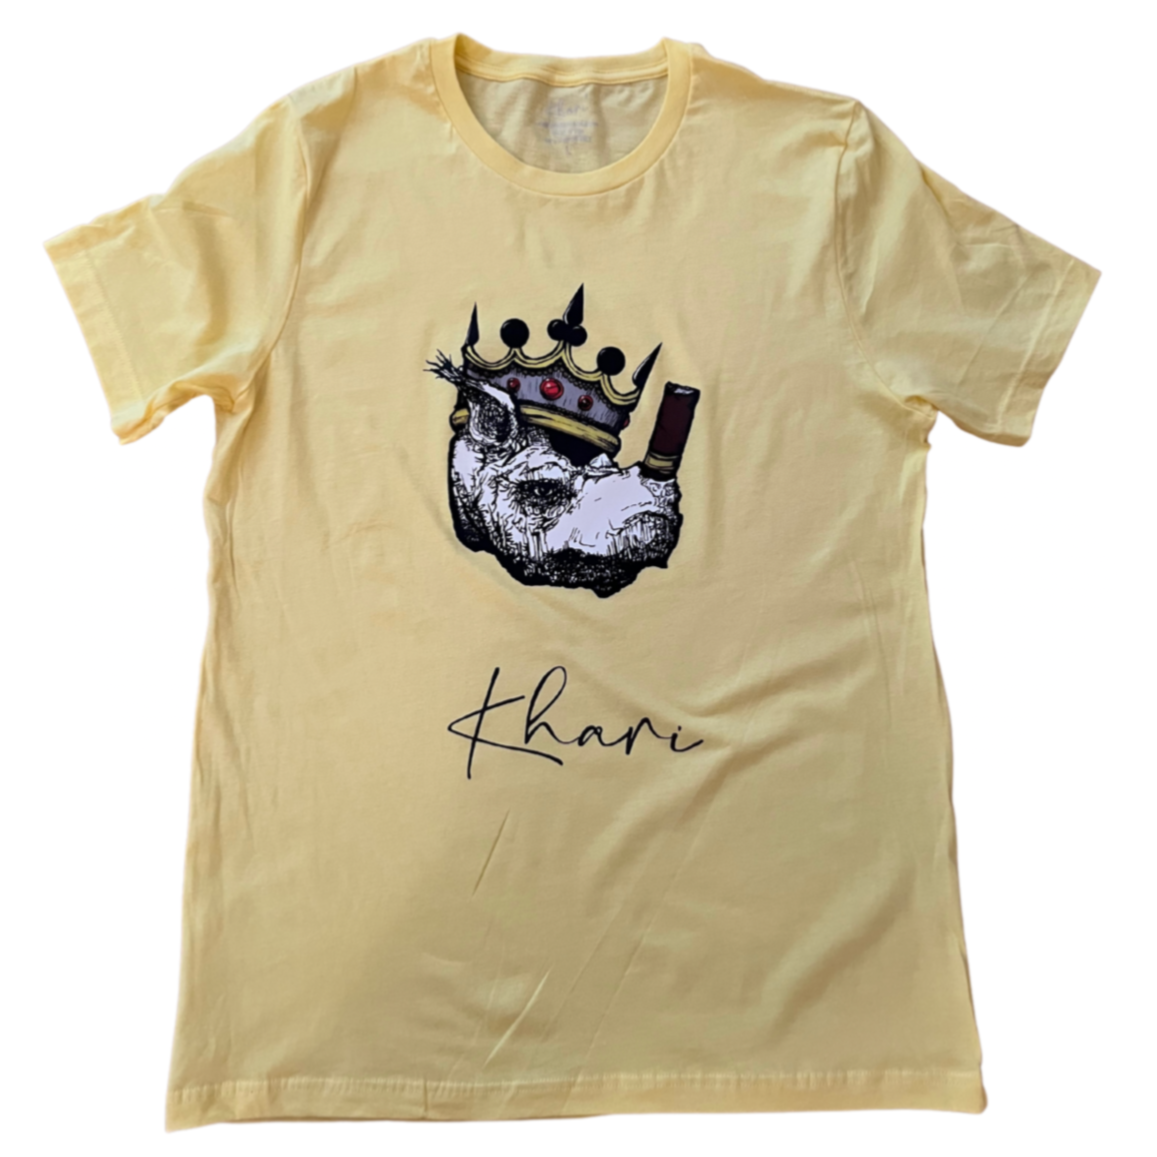 Yellow Khari T-shirt